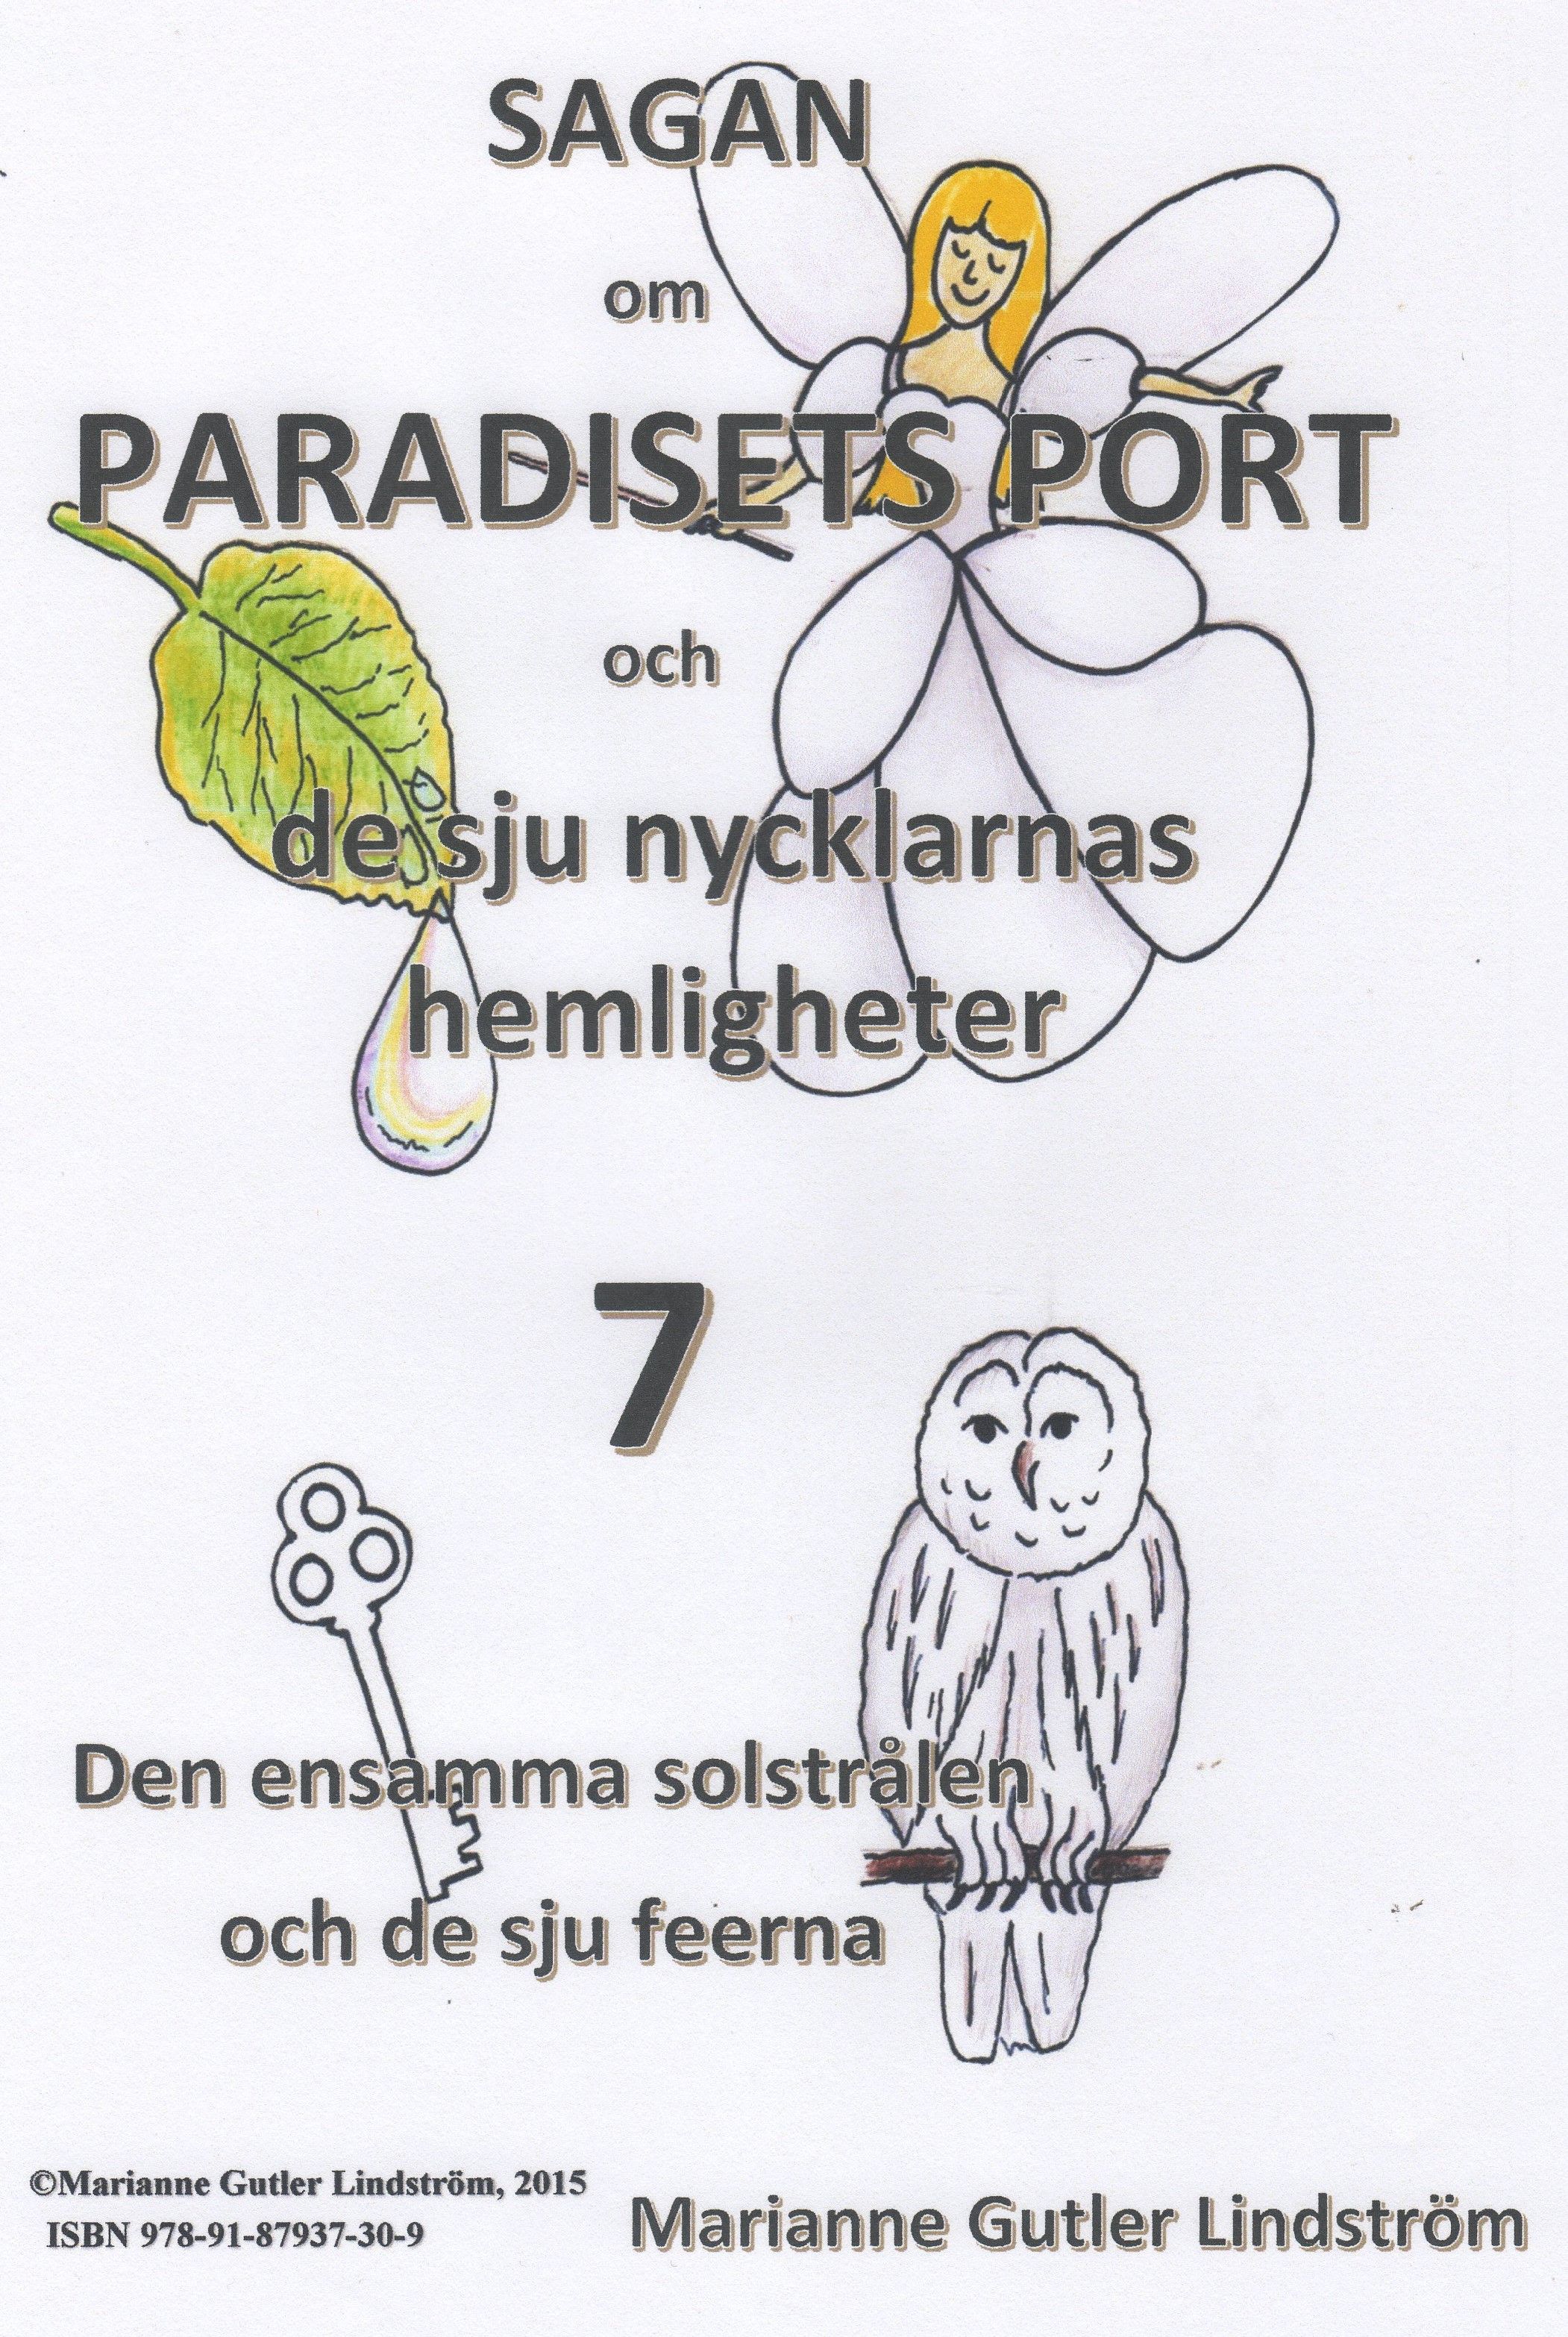 Sagan om Paradisets Port 7  Den ensamma solstrålen och de sju feerna, eBook by Marianne Gutler Lindström